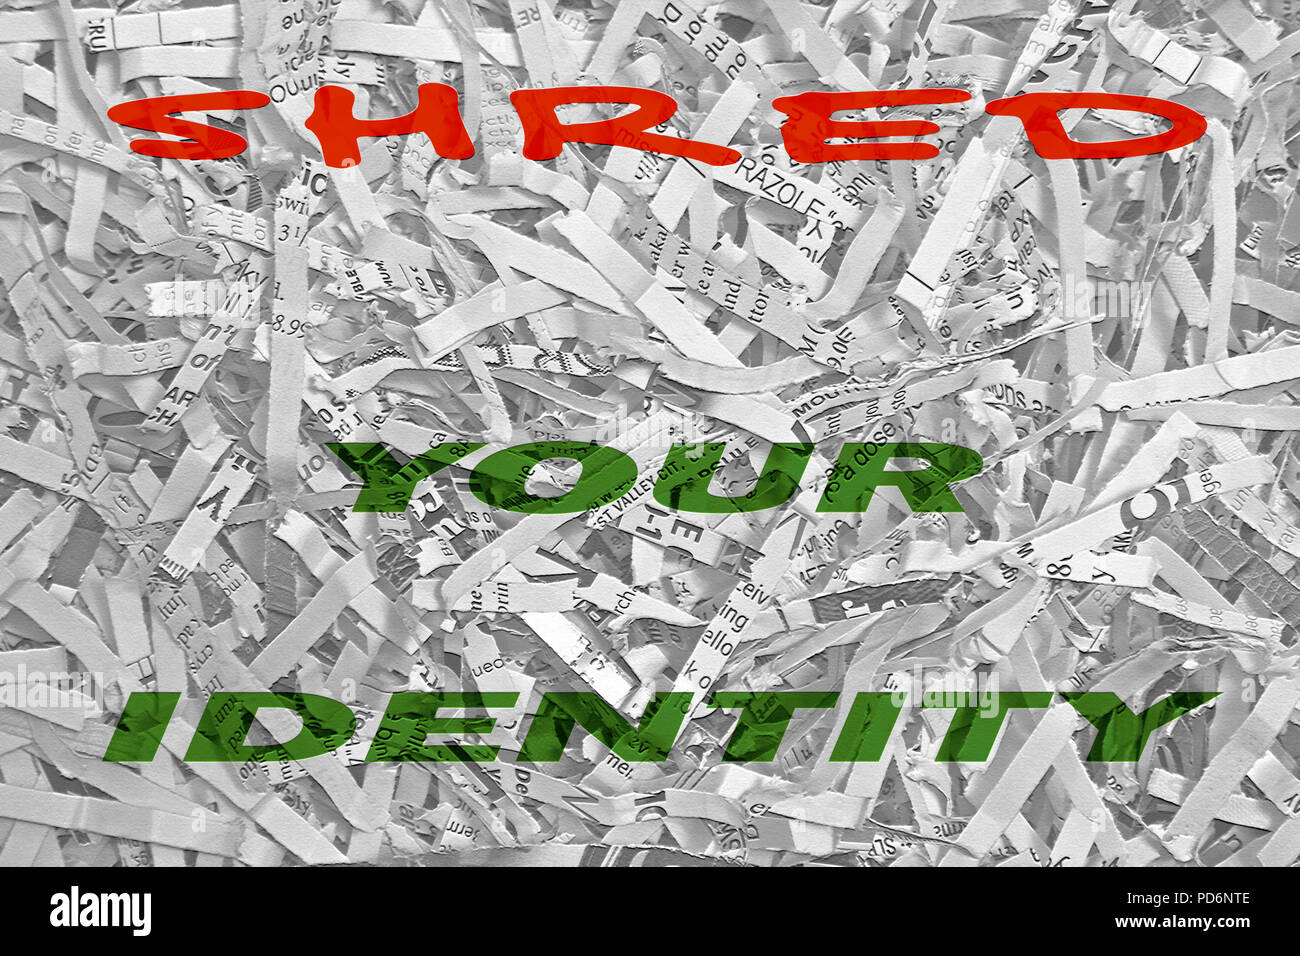 Le parole "hred la vostra identità" in grassetto e colorato tipo è sovrapposto su una fotografia in bianco e nero di bit di carta tagliuzzata da una famiglia shre Foto Stock